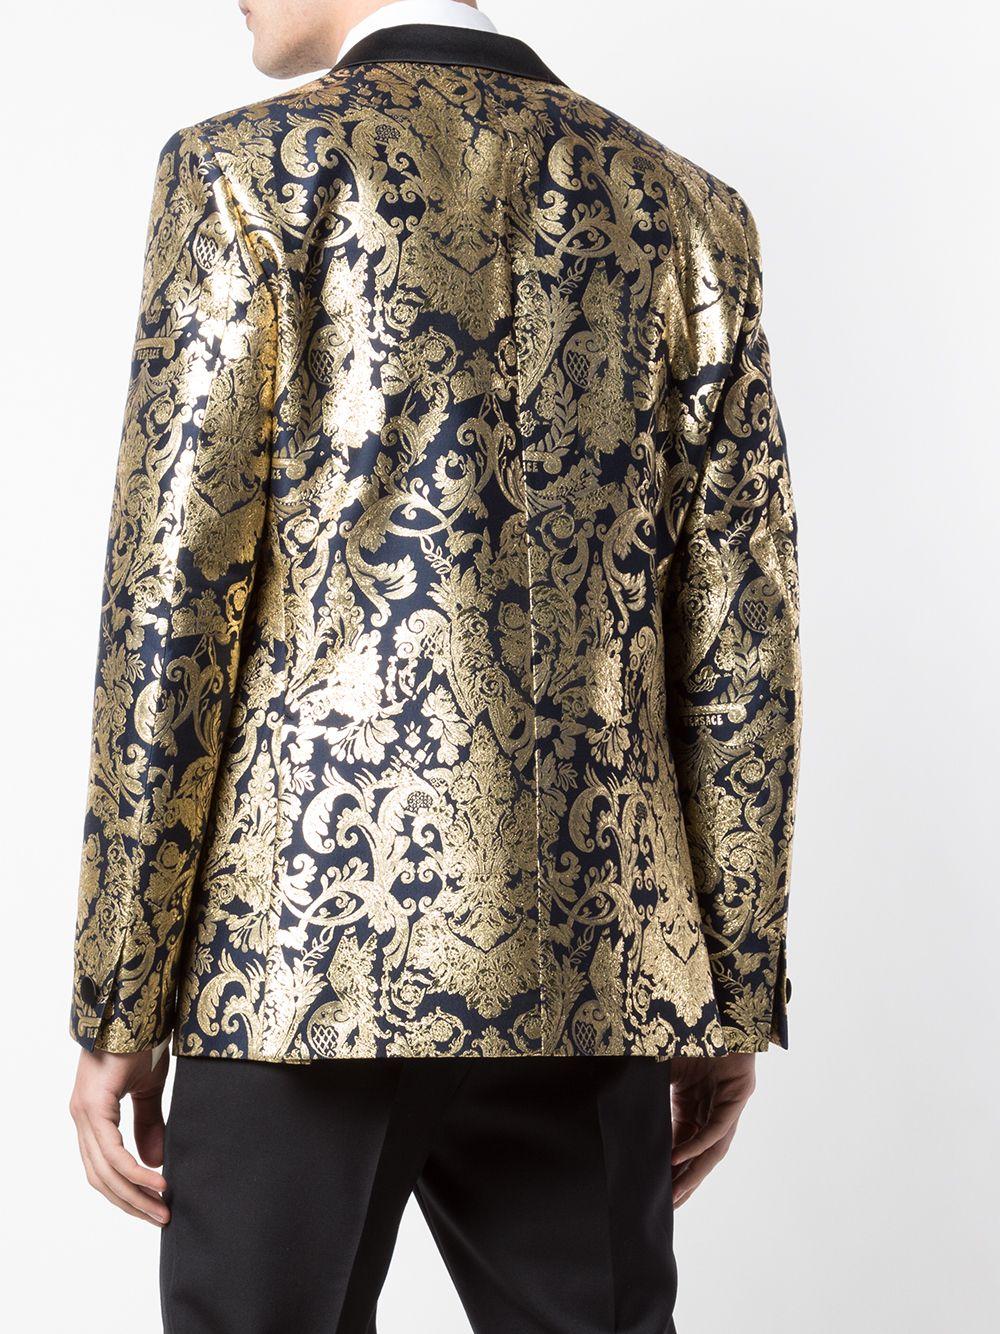 Noir Versace - Blazer/veste de soirée en brocart baroque métallisé or et bleu marine pour homme, taille 56 (IT) en vente